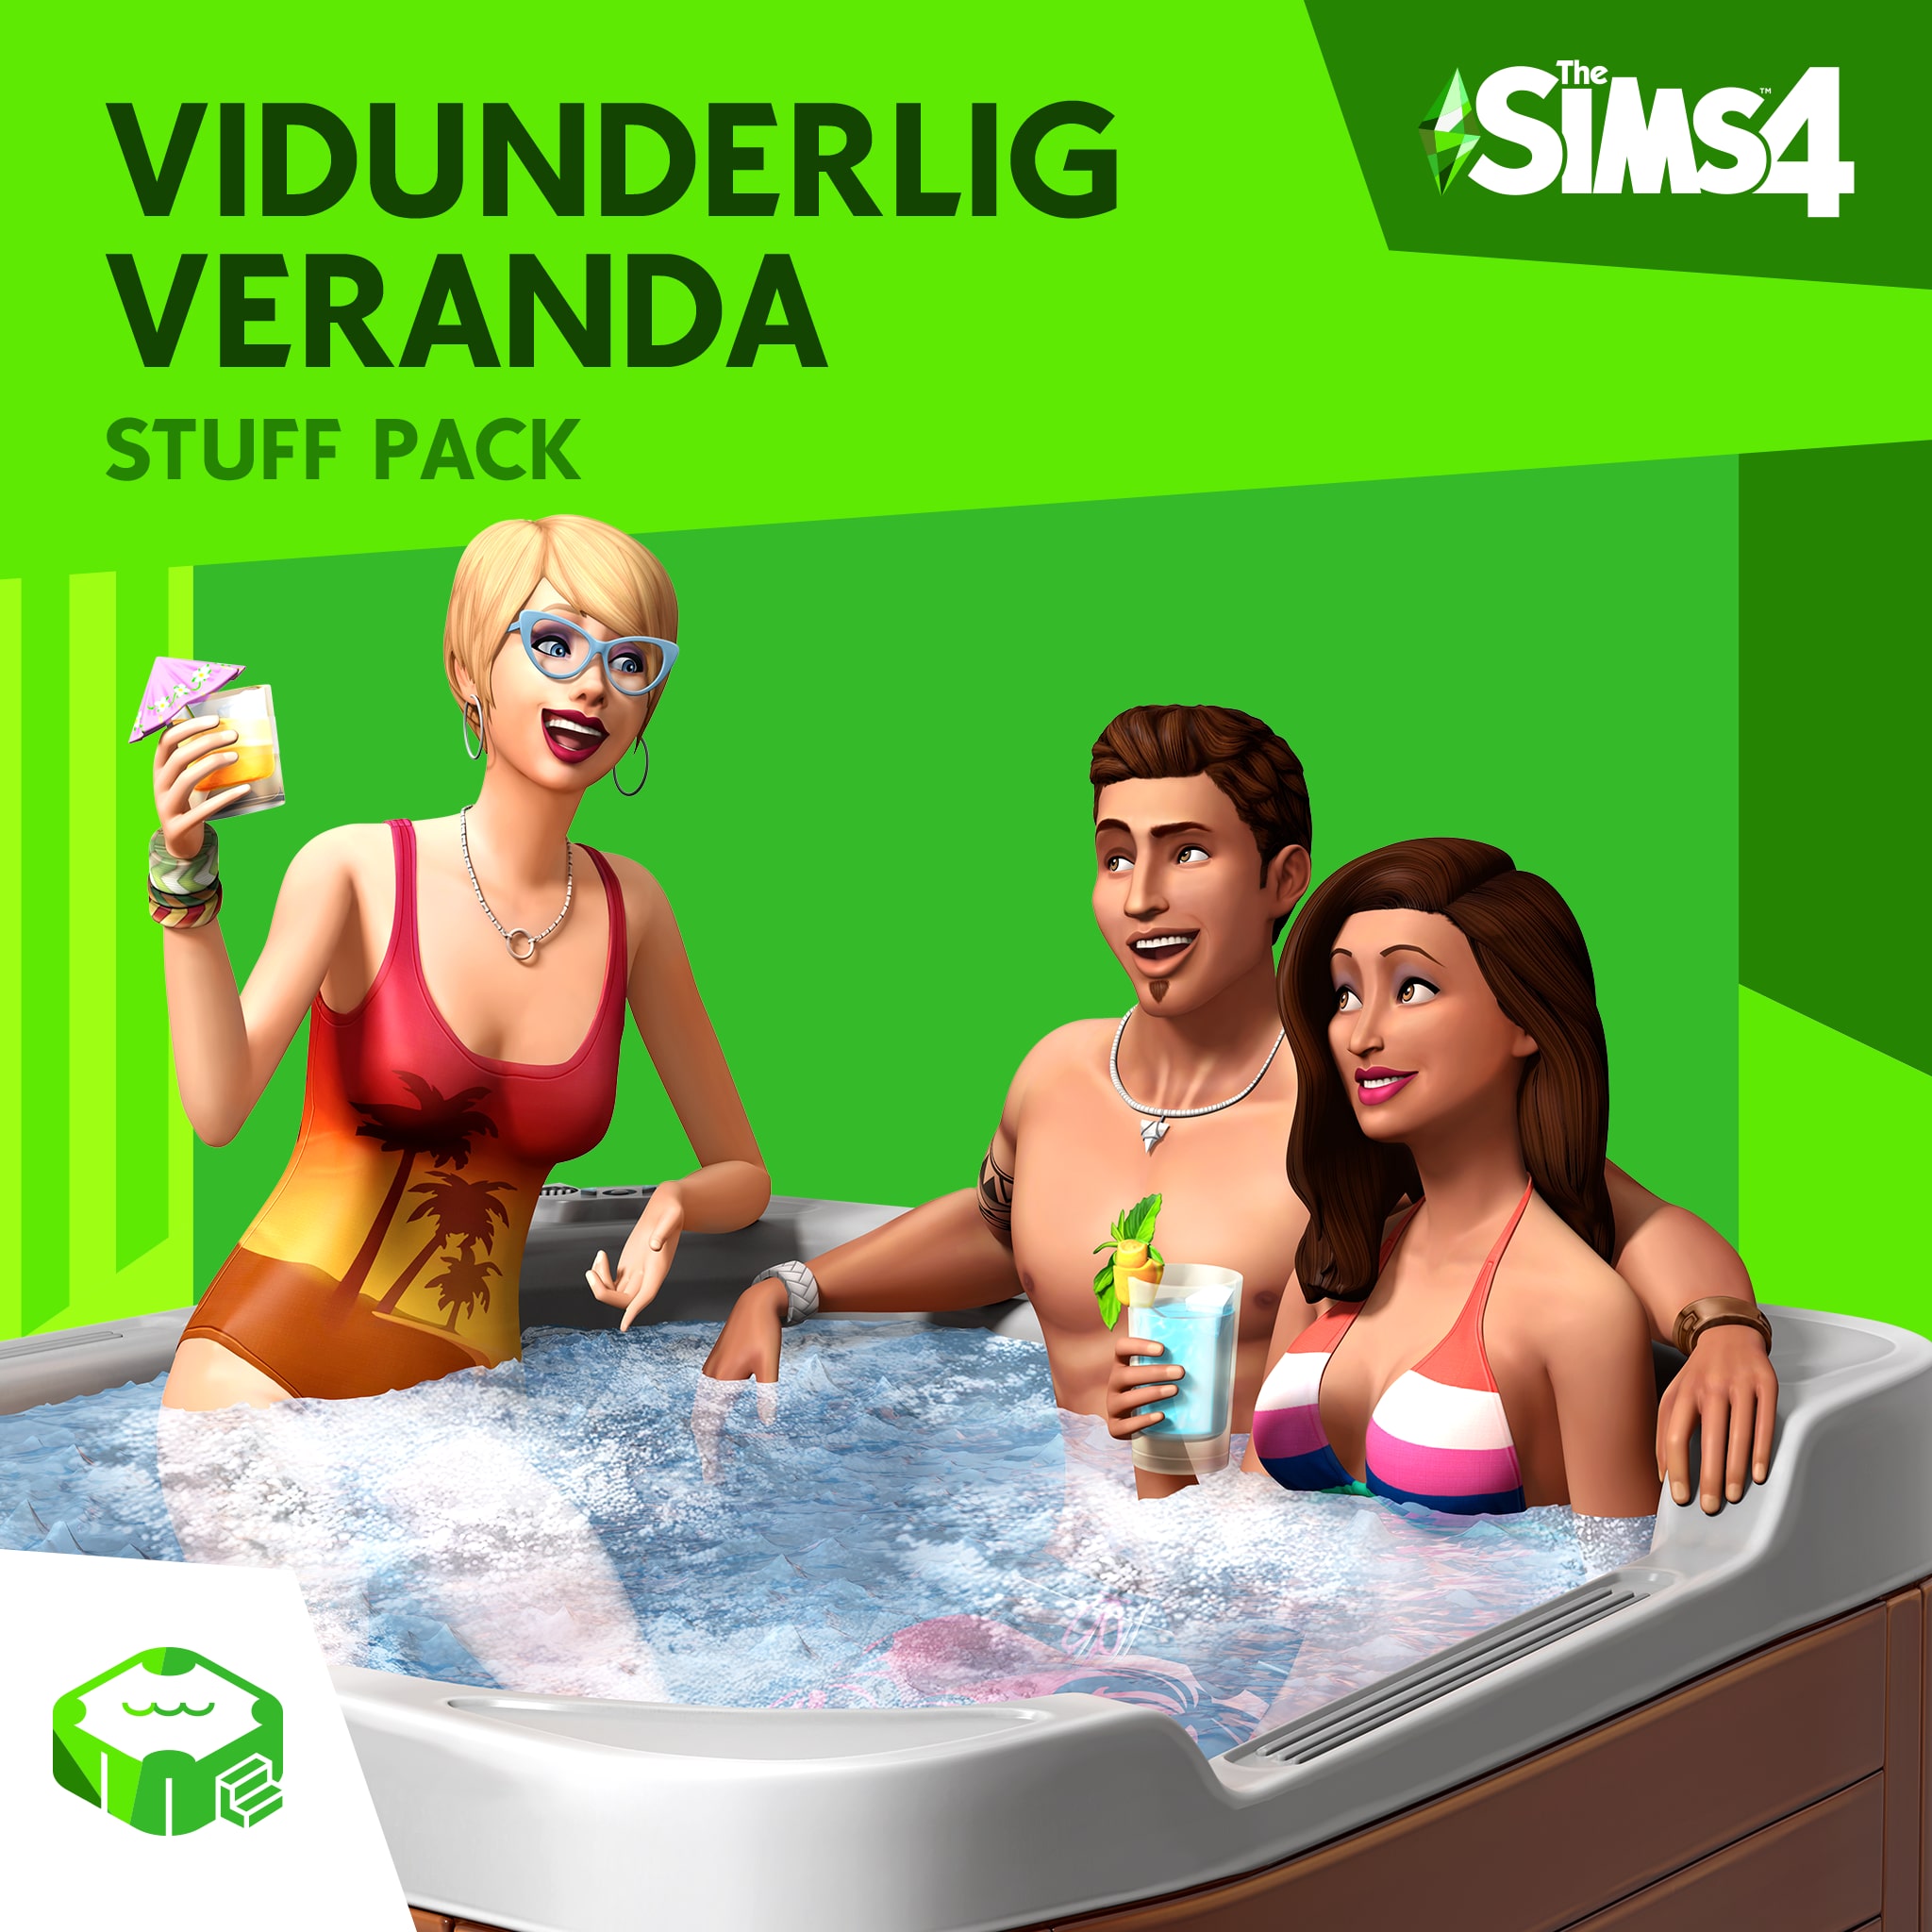 The Sims™ 4 Vidunderlig veranda Stuff